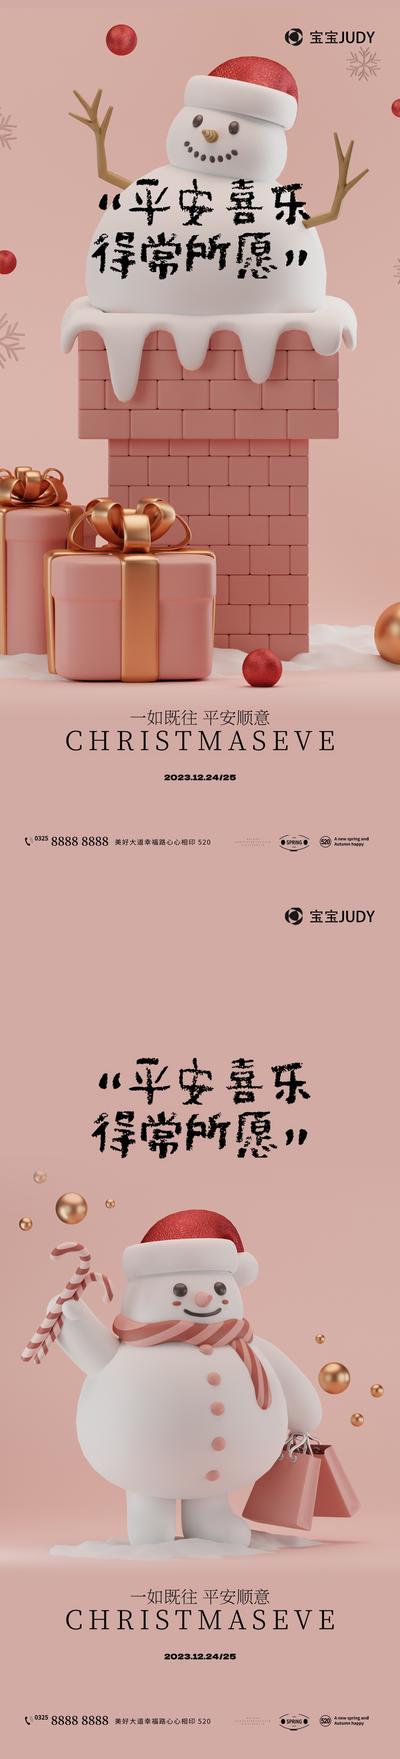 南门网 广告 海报 插画 圣诞节 节日 创意 商业 3D立体 平安夜 矢量 商场 圣诞老人 红色 雪人 礼物 圣诞树 时尚